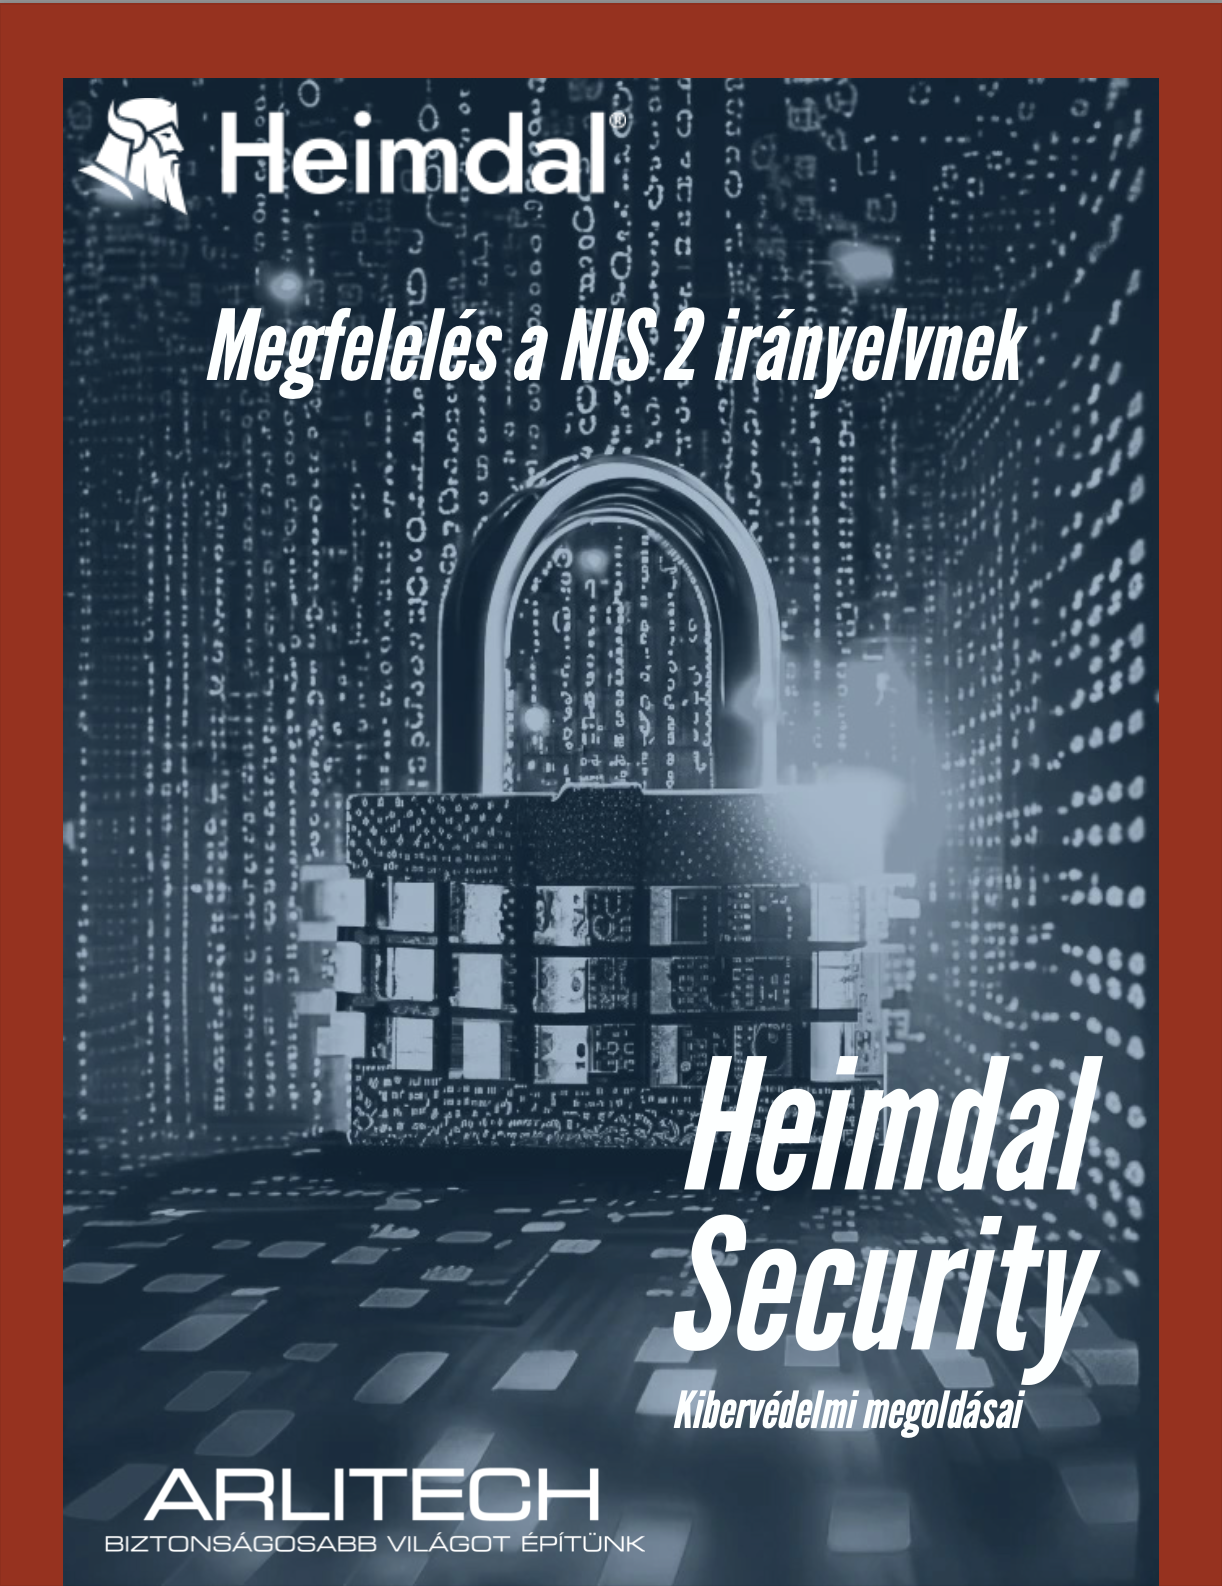 NIS2, Heimdal security